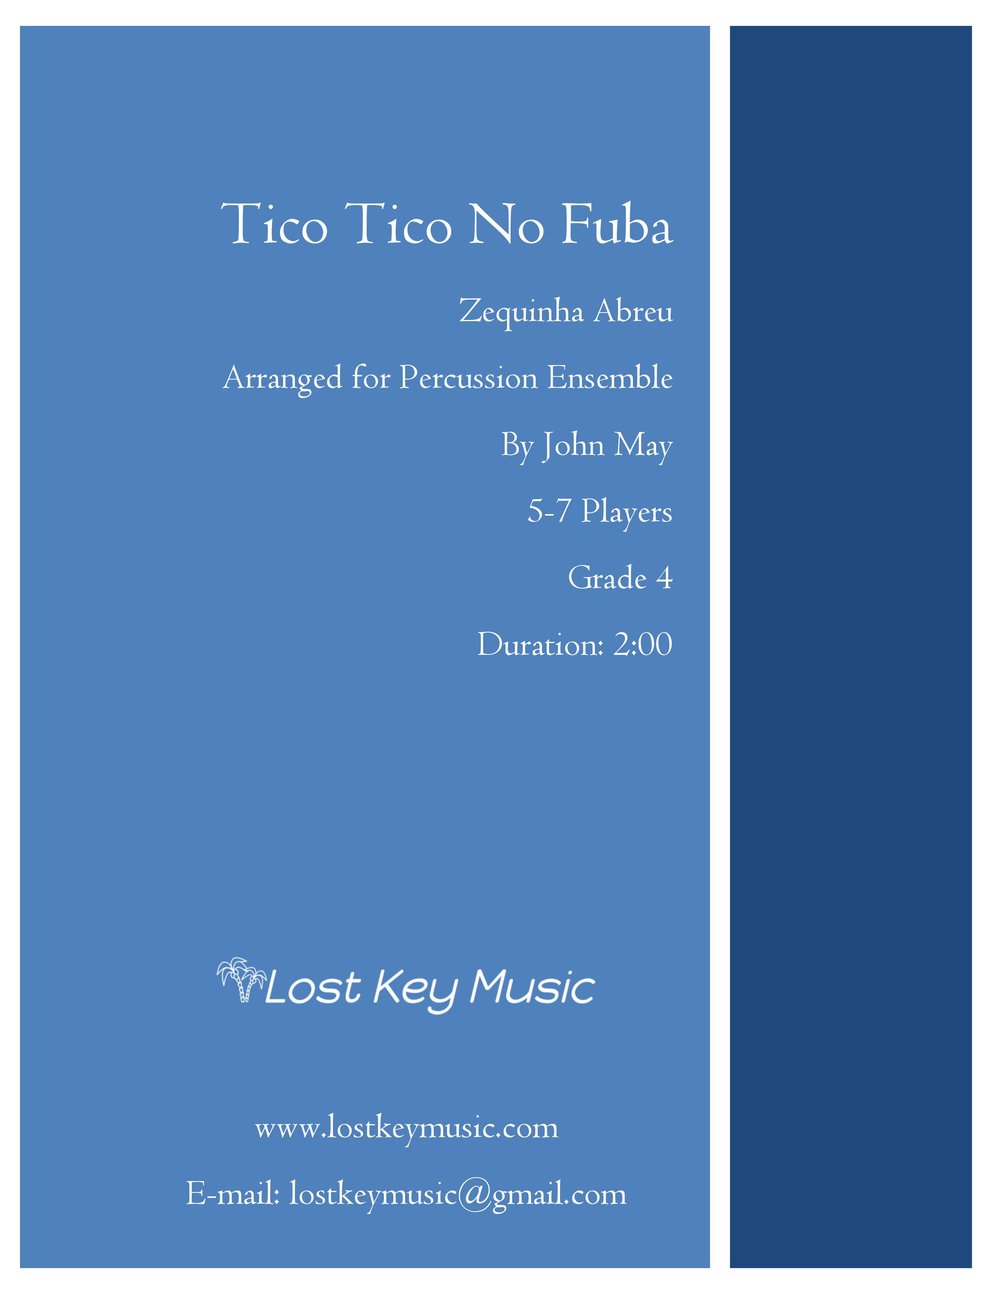 Tico Tico No Fuba - Percussion Ensemble (Digital Download)